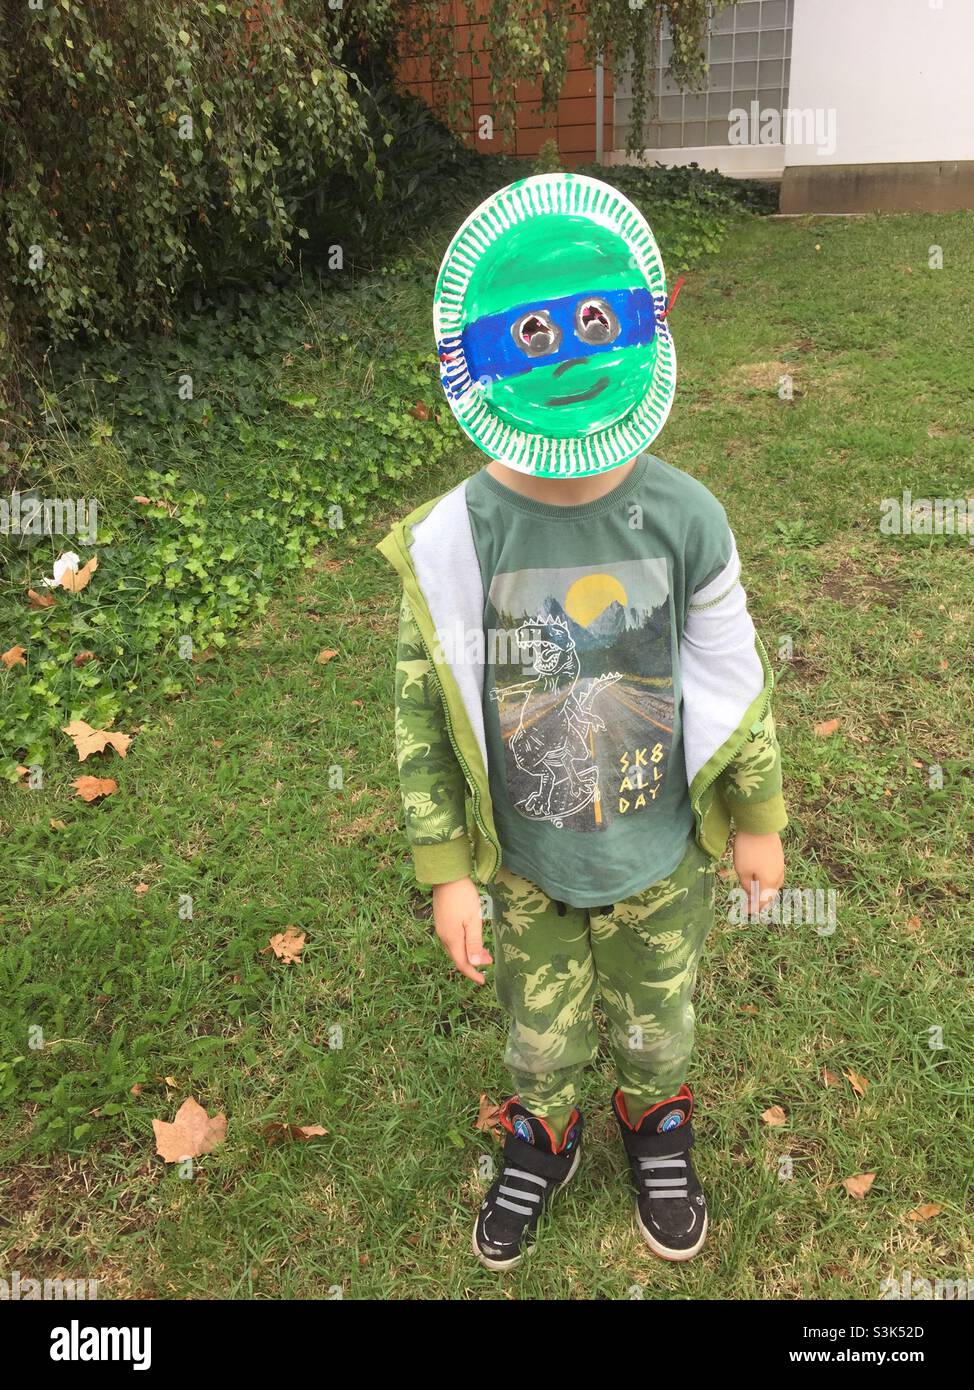 Ninja turtle where immagini e fotografie stock ad alta risoluzione - Alamy